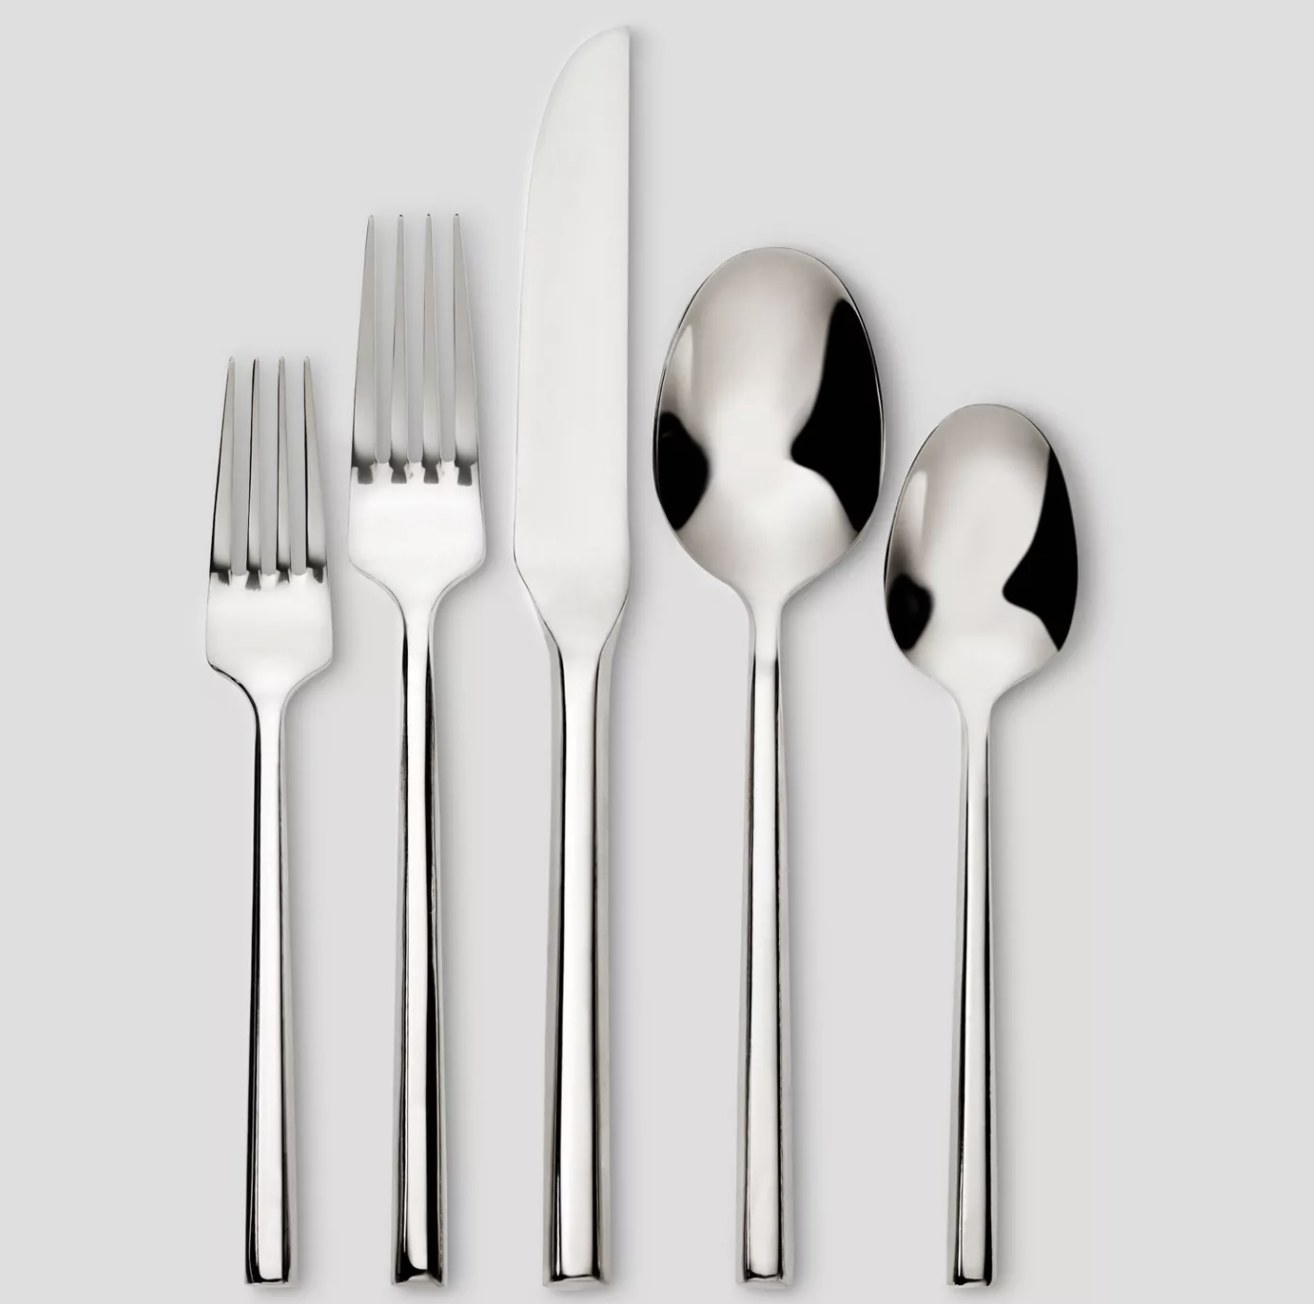 a salad fork, dinner fork, knife, tablespoon, and teaspoon